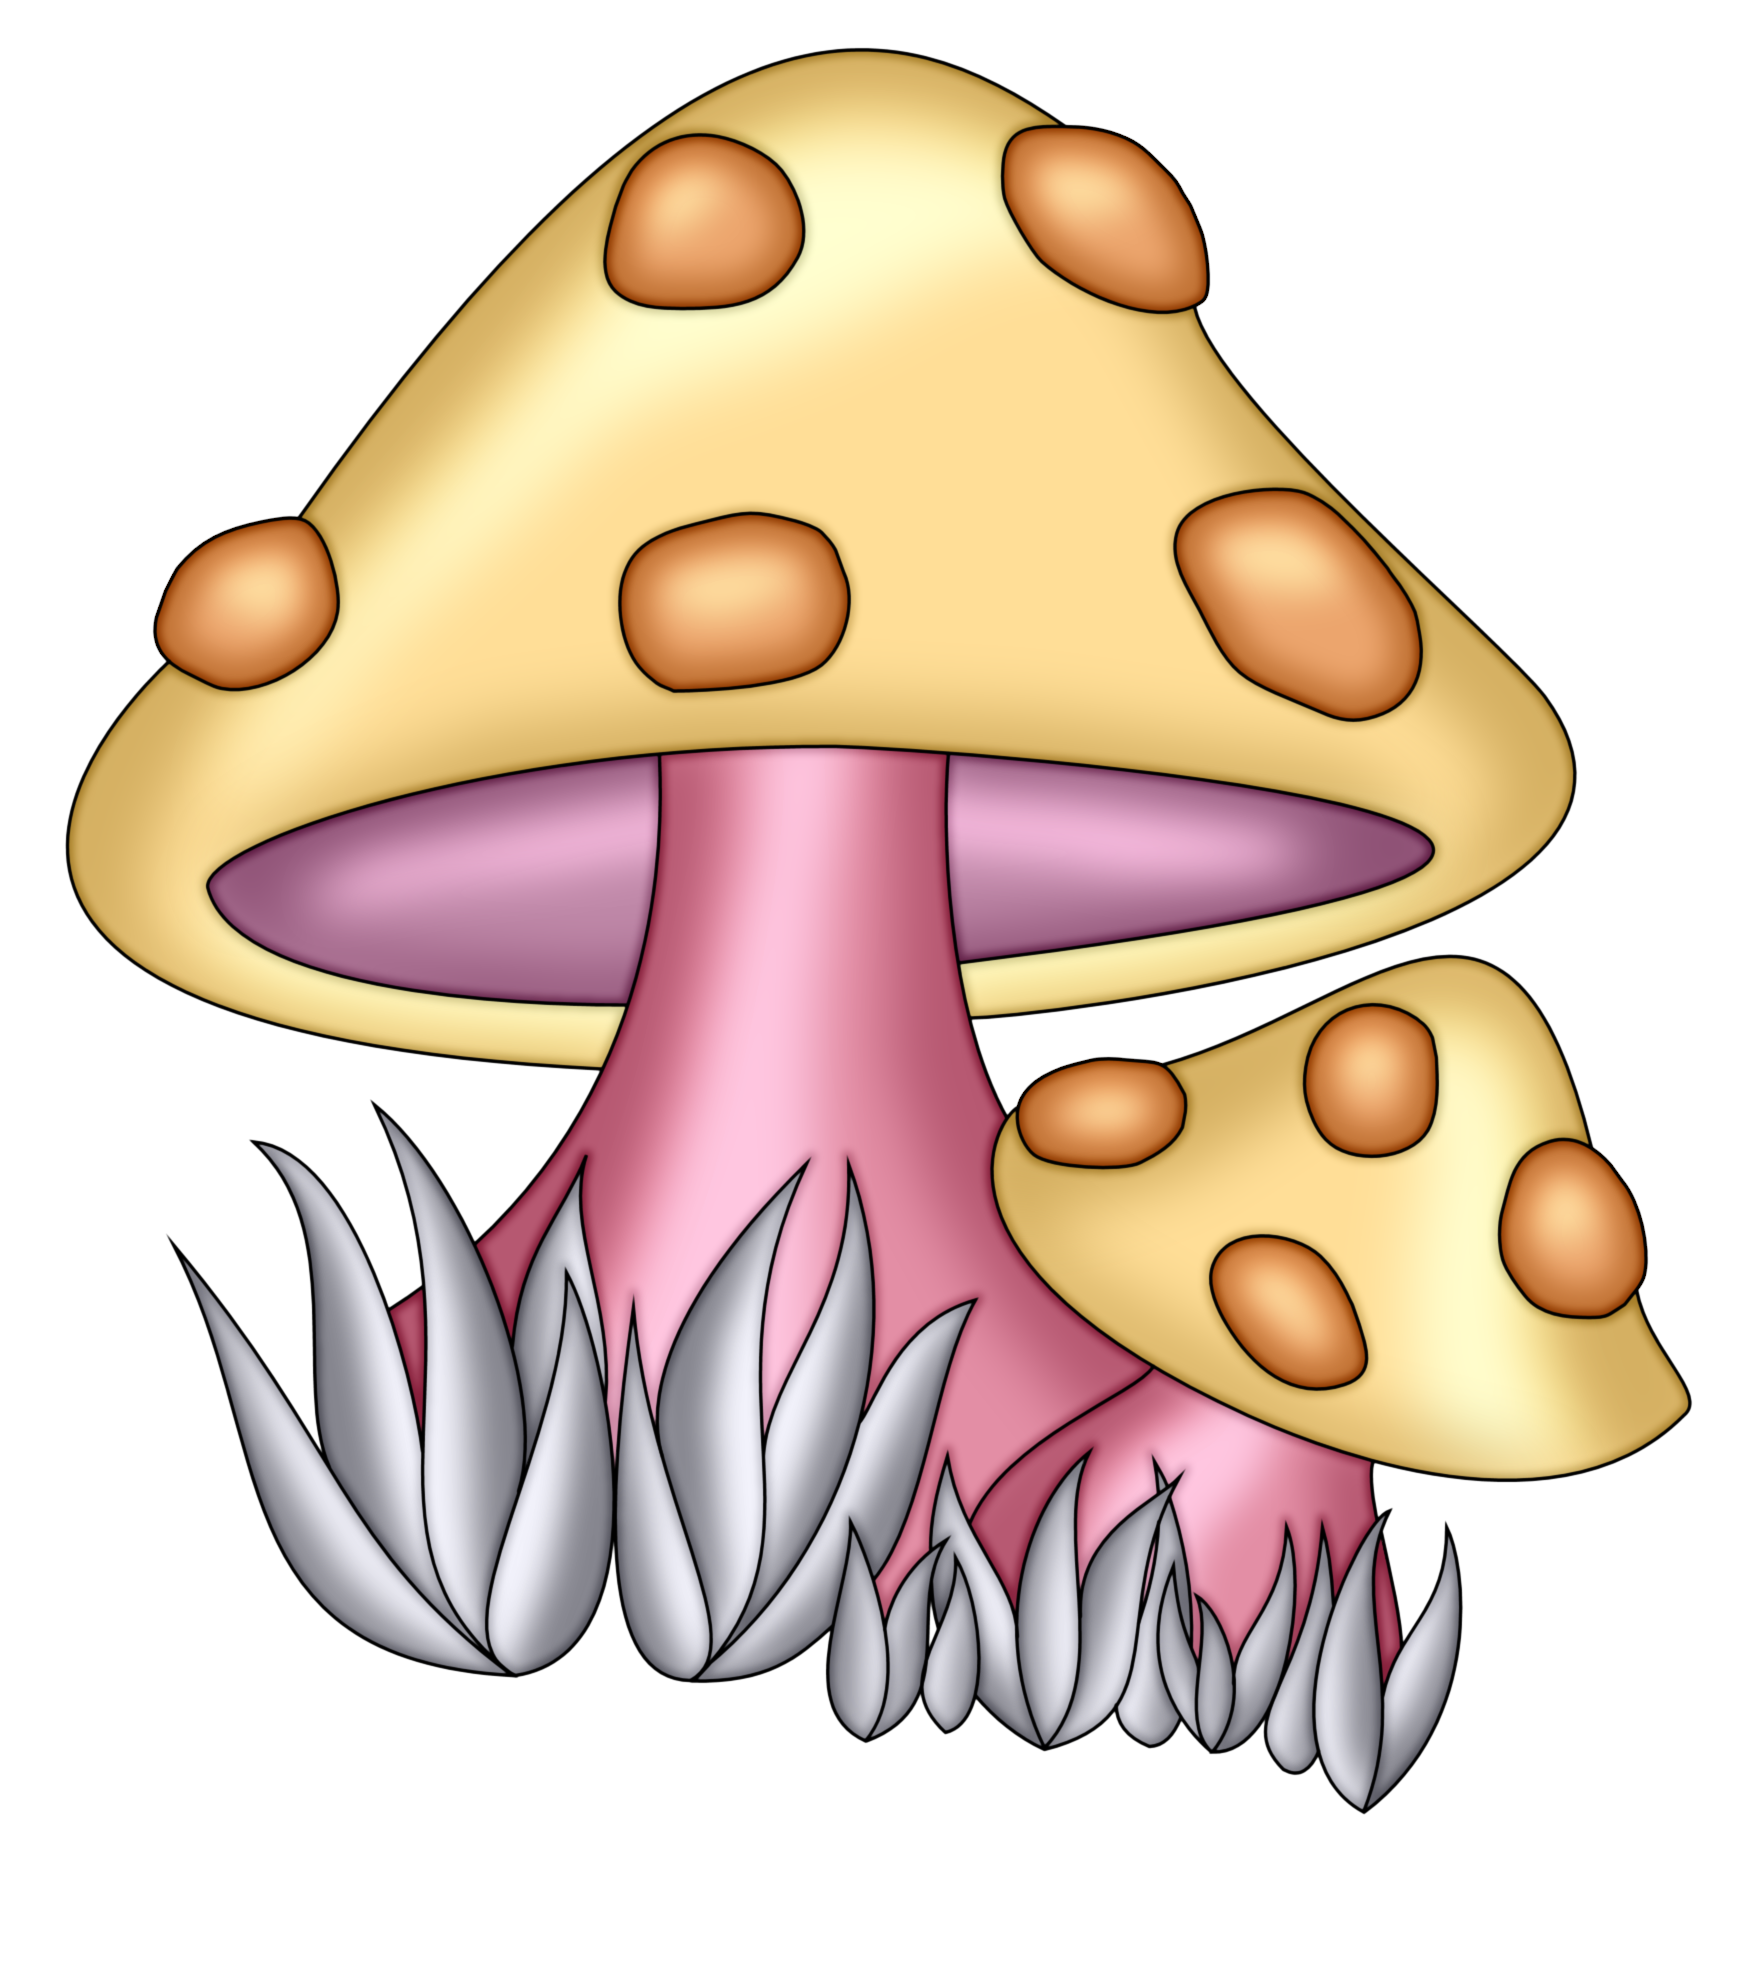 Рисунок гриб символами